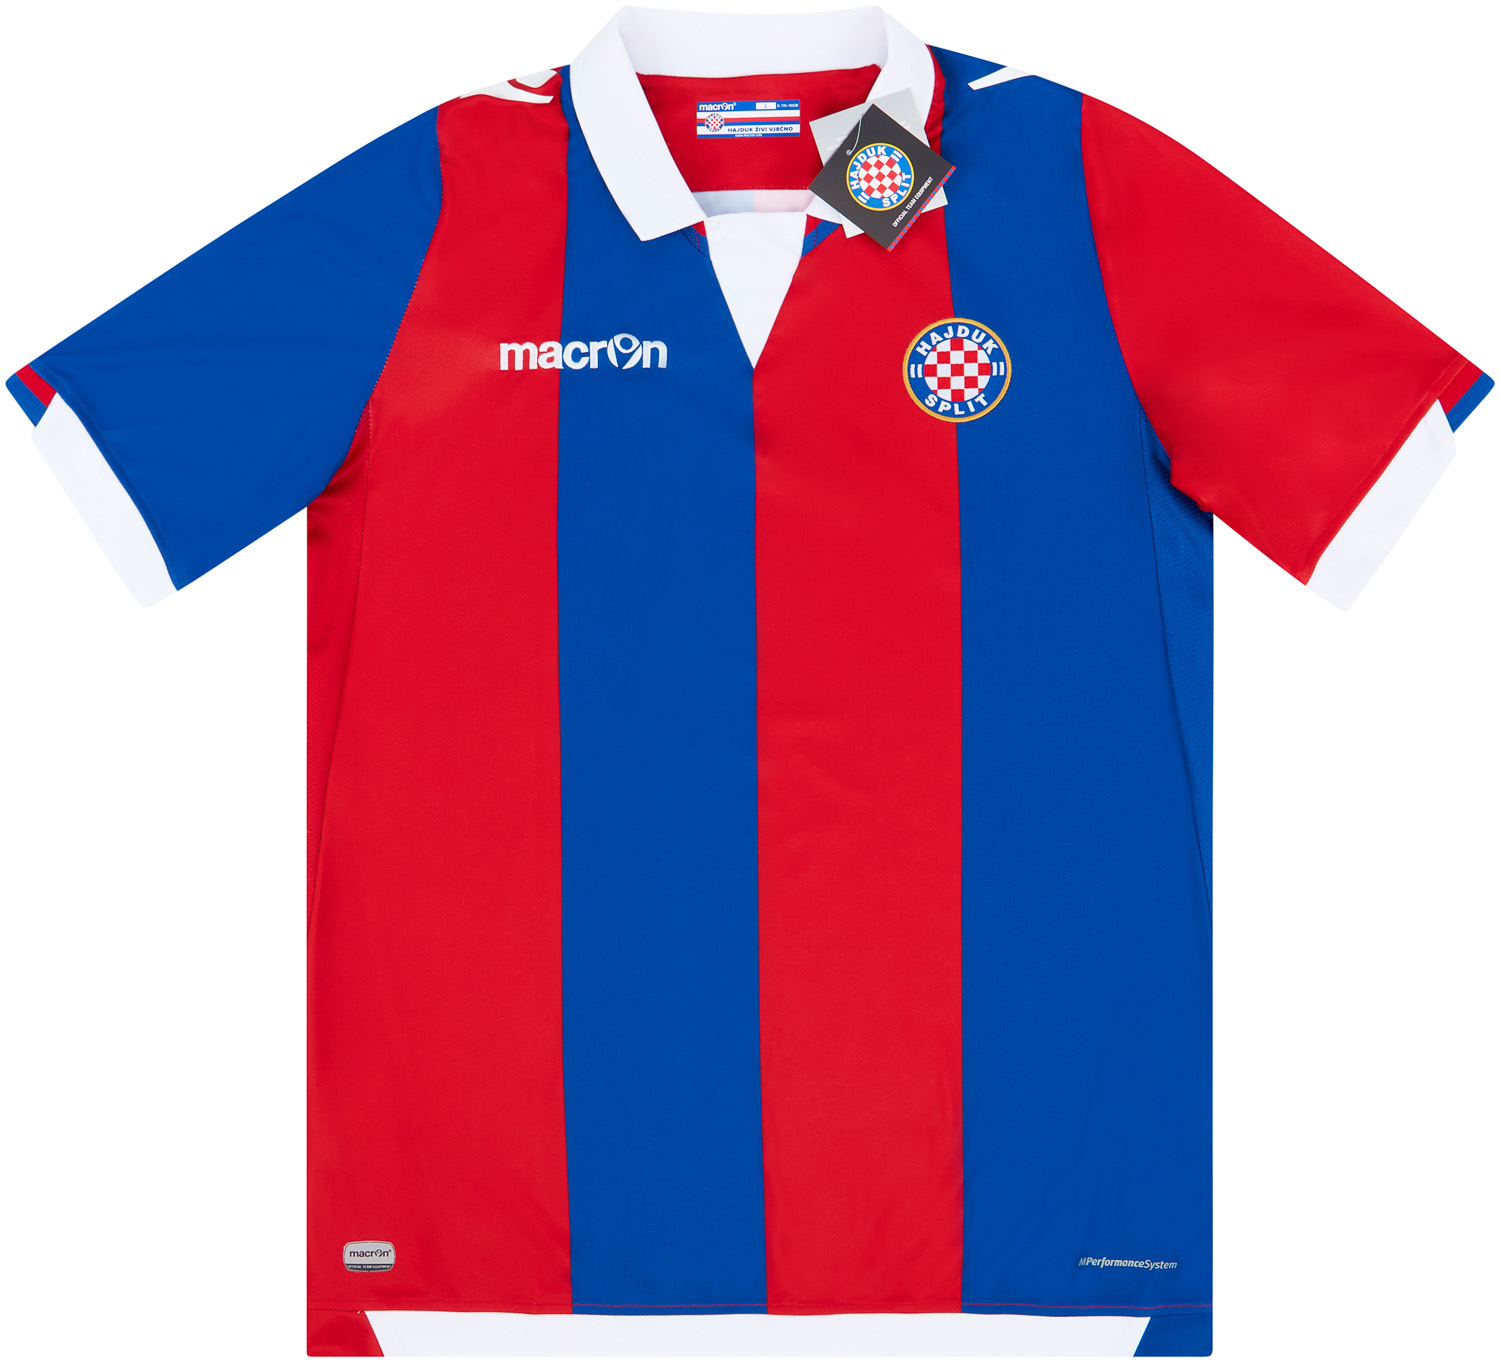 2016-17 Hajduk Split Away Shirt - NEW